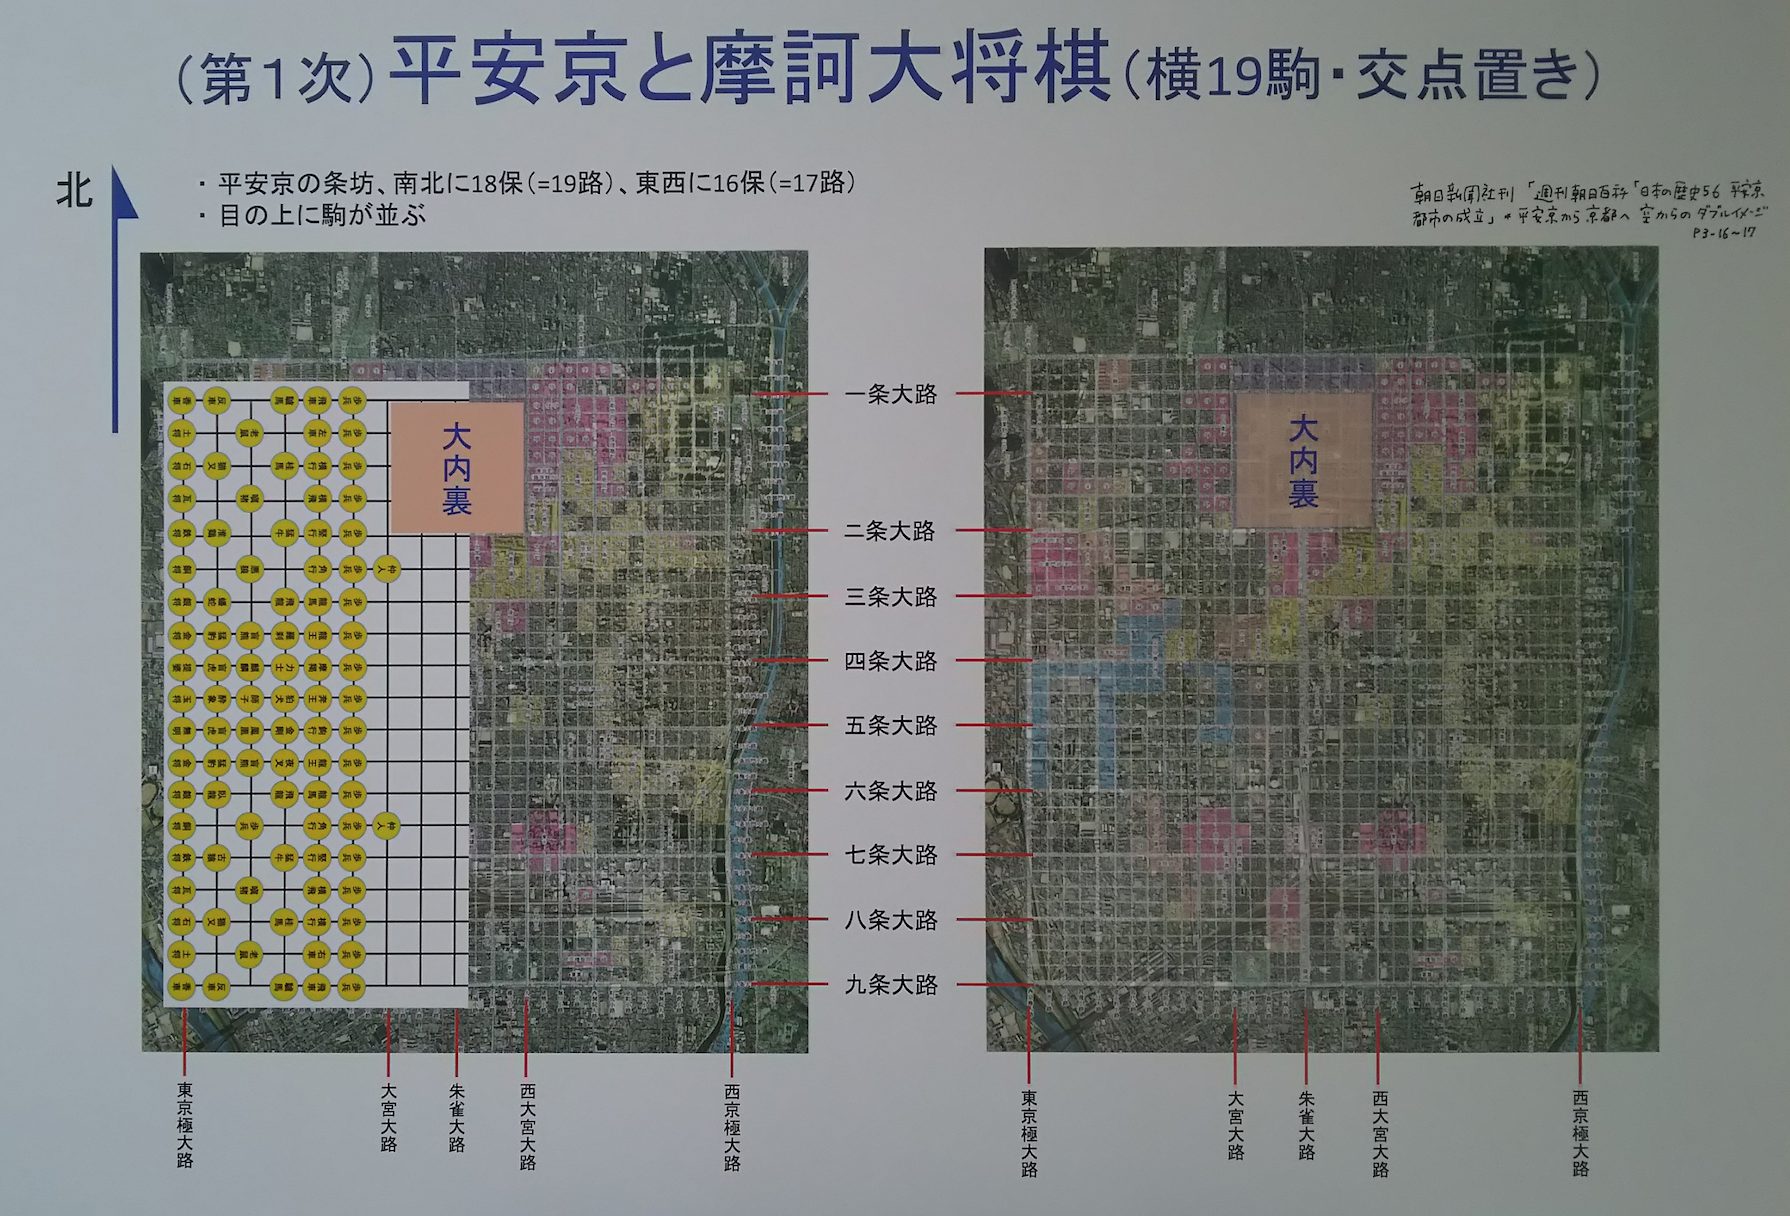 写真1:平安京の区画と将棋盤のマスが一致 著作権:国土地理院、朝日新聞社